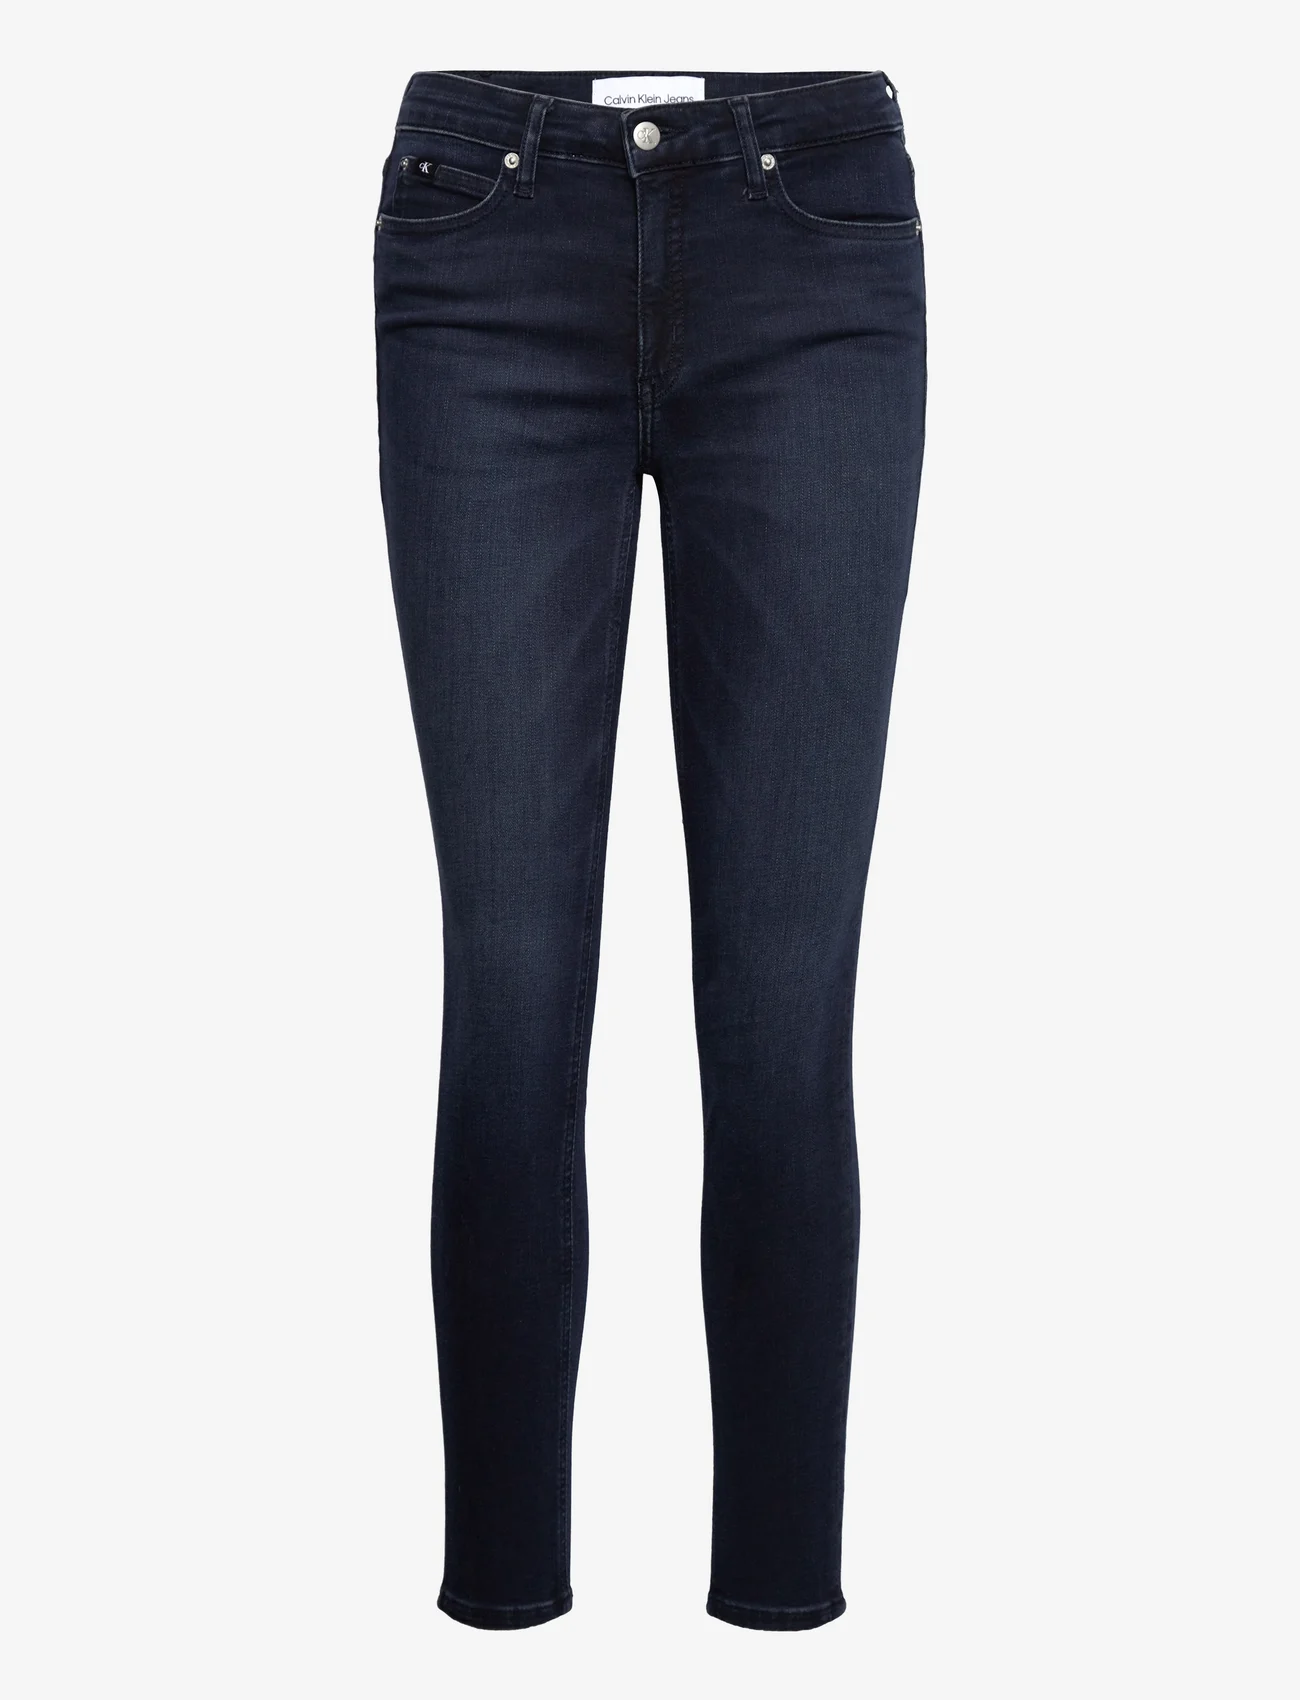 Calvin Klein Jeans - MID RISE SKINNY ANKLE - skinny jeans - denim dark - 0